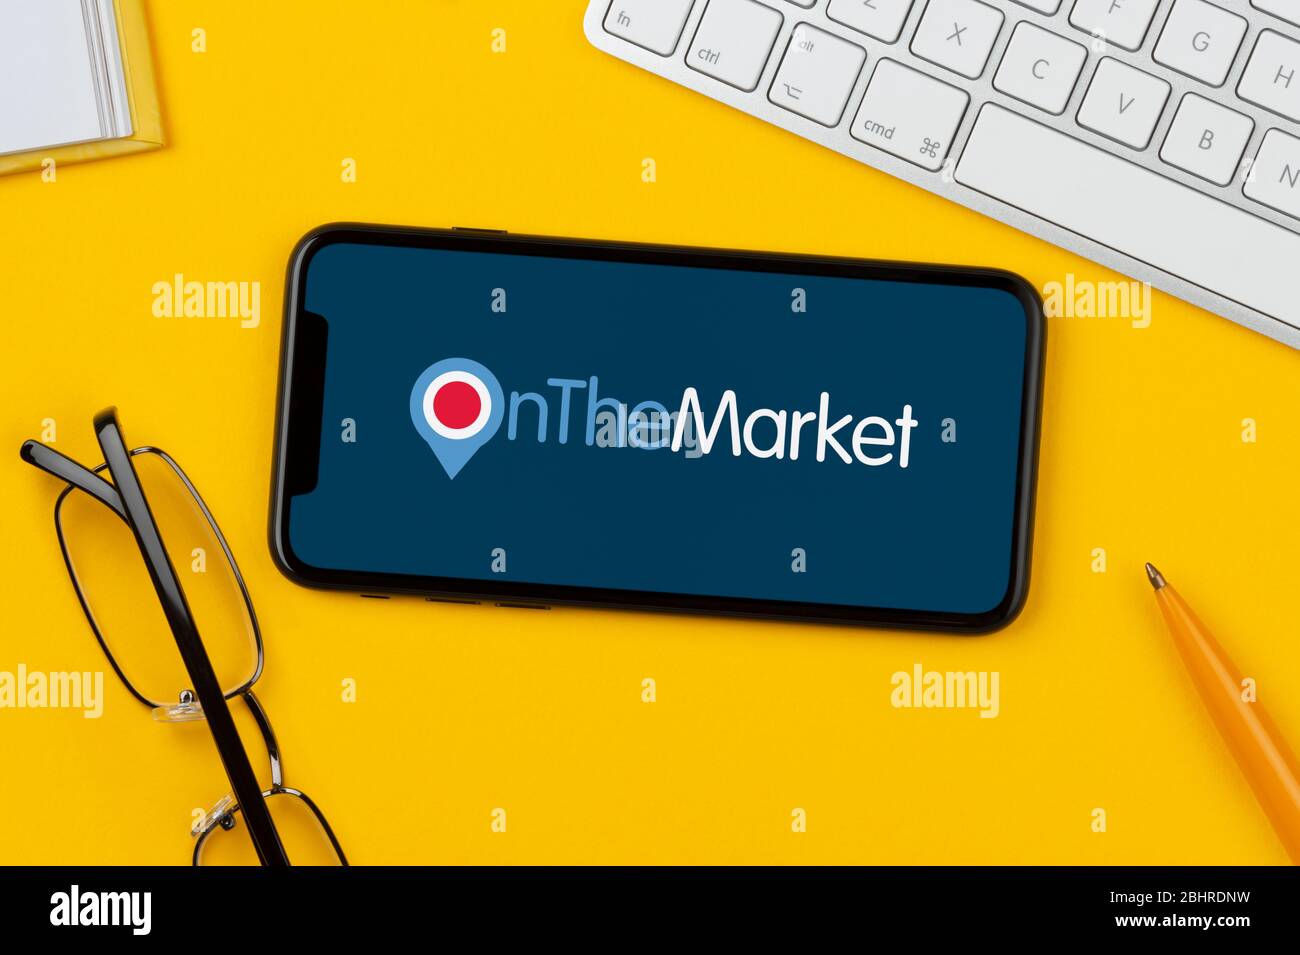 Un smartphone affichant le logo OnTheMarket repose sur un fond jaune avec un clavier, des lunettes, un stylo et un livre (usage éditorial uniquement). Banque D'Images